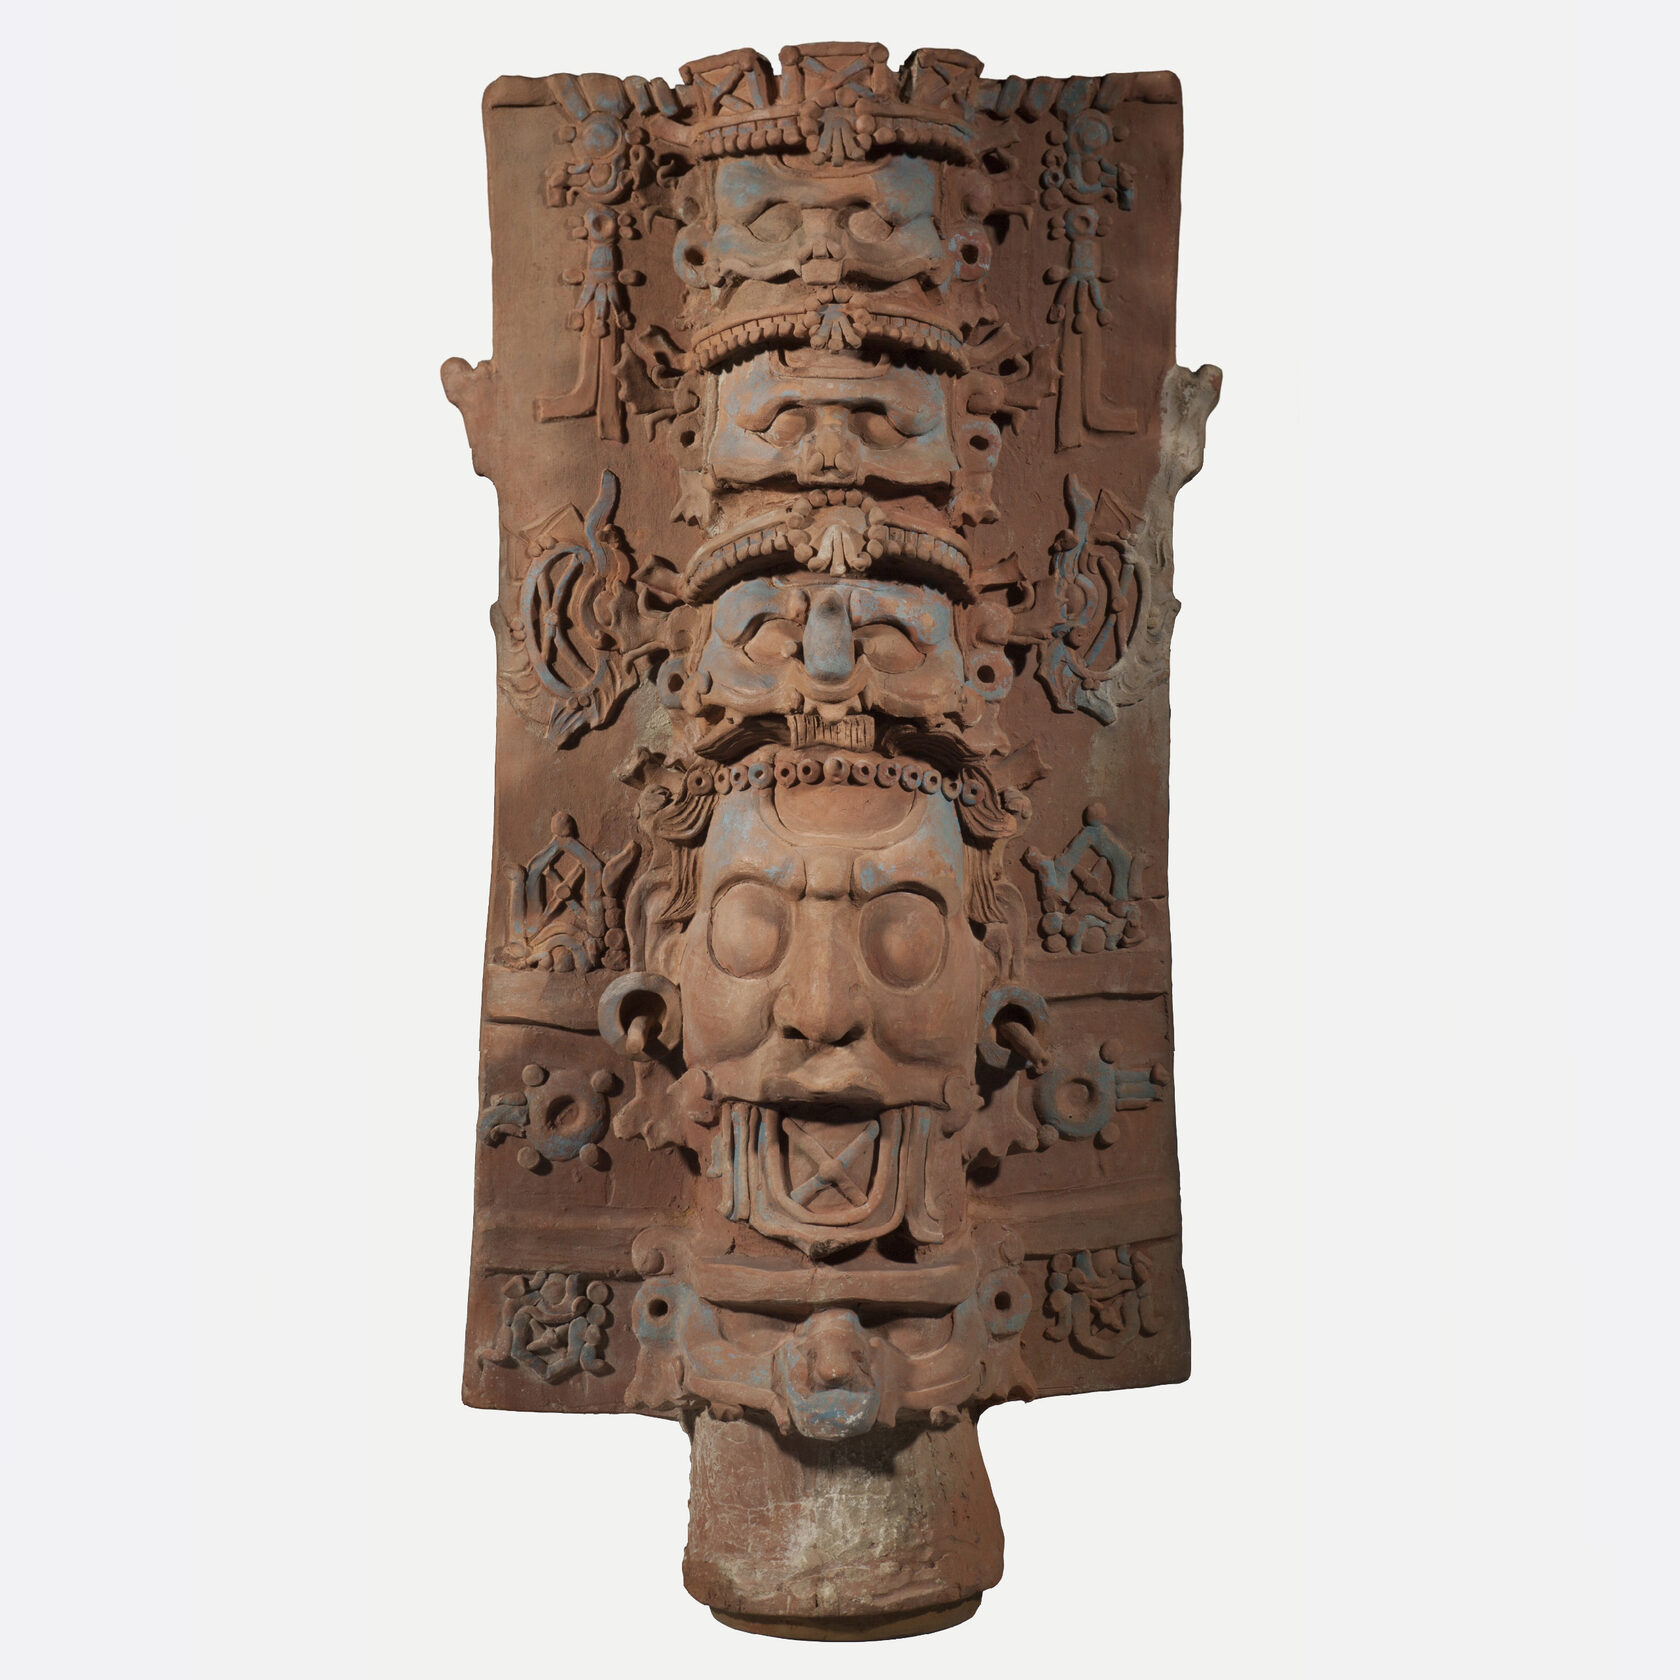 Подставка для курильницы с изображениями ликов божеств. Майя, 690-720 гг. н.э. Коллекция Kimbell Art Museum, Форт-Уэрт, Техас.